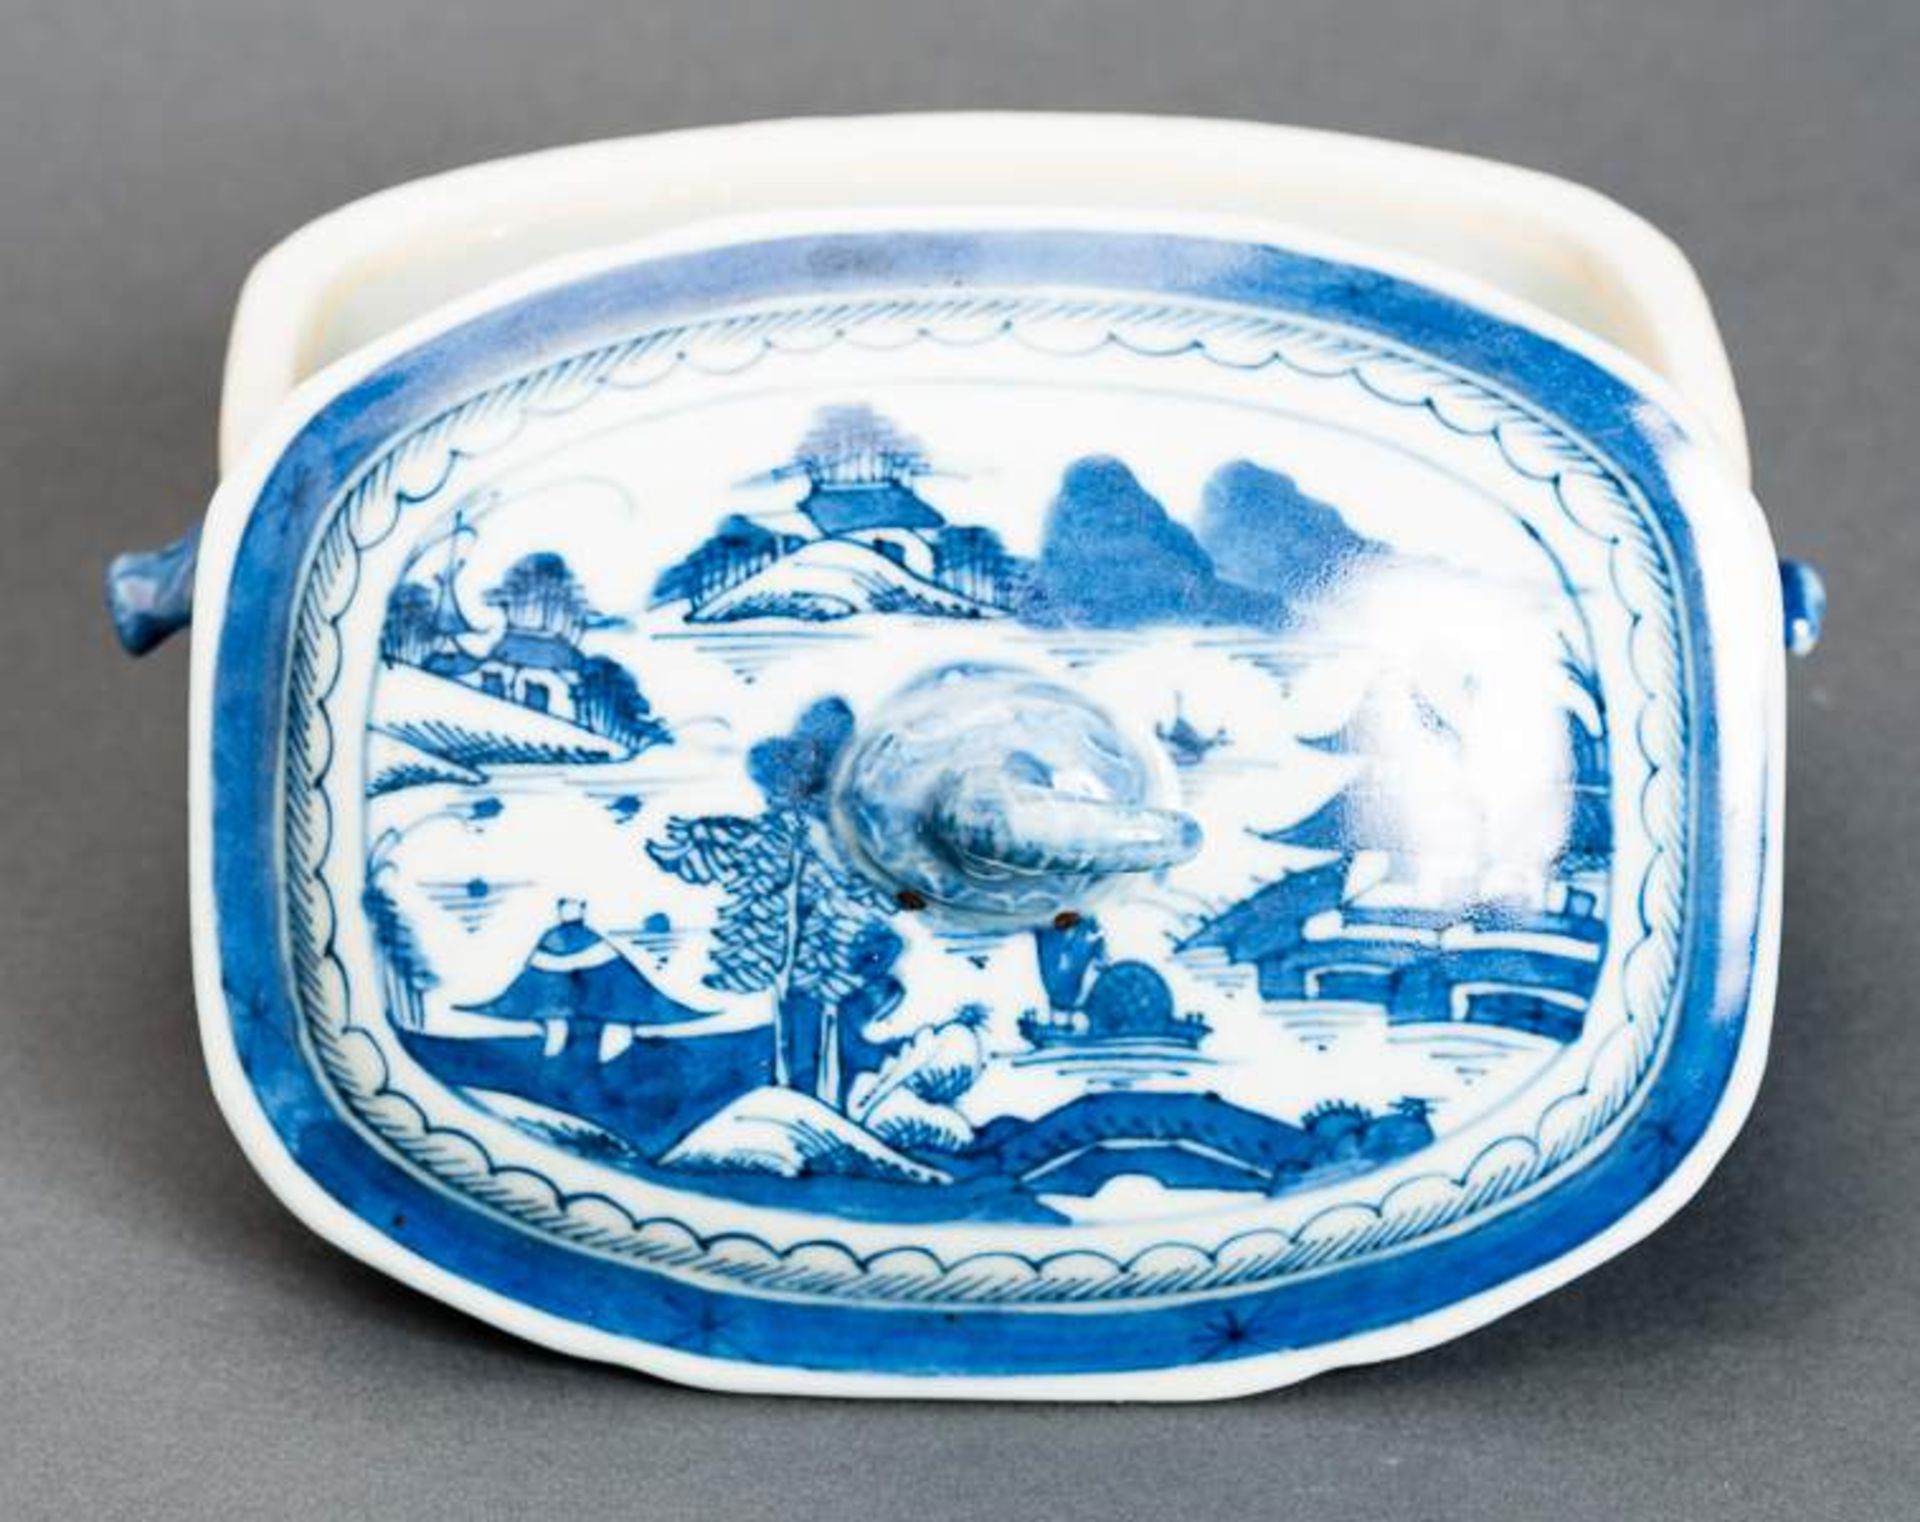 DECKELSCHALE Blauweiß-Porzellan. China, Qing-Dynastie, 19. Jh. Diese sehr ansprechende oval- - Image 8 of 11